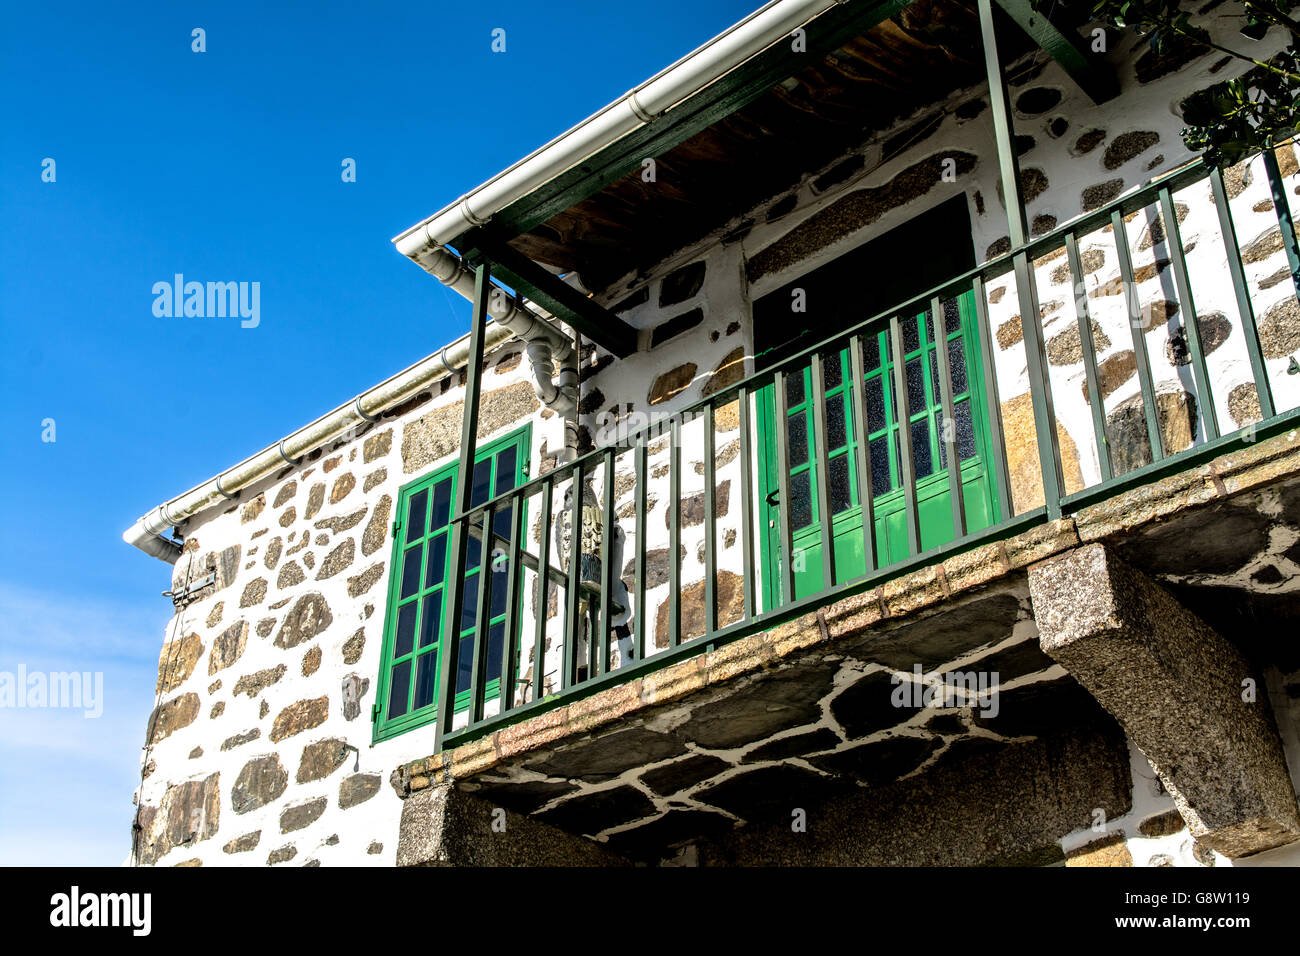 Low Angle View de vieille maison traditionnelle balcon Contre Ciel clair Banque D'Images